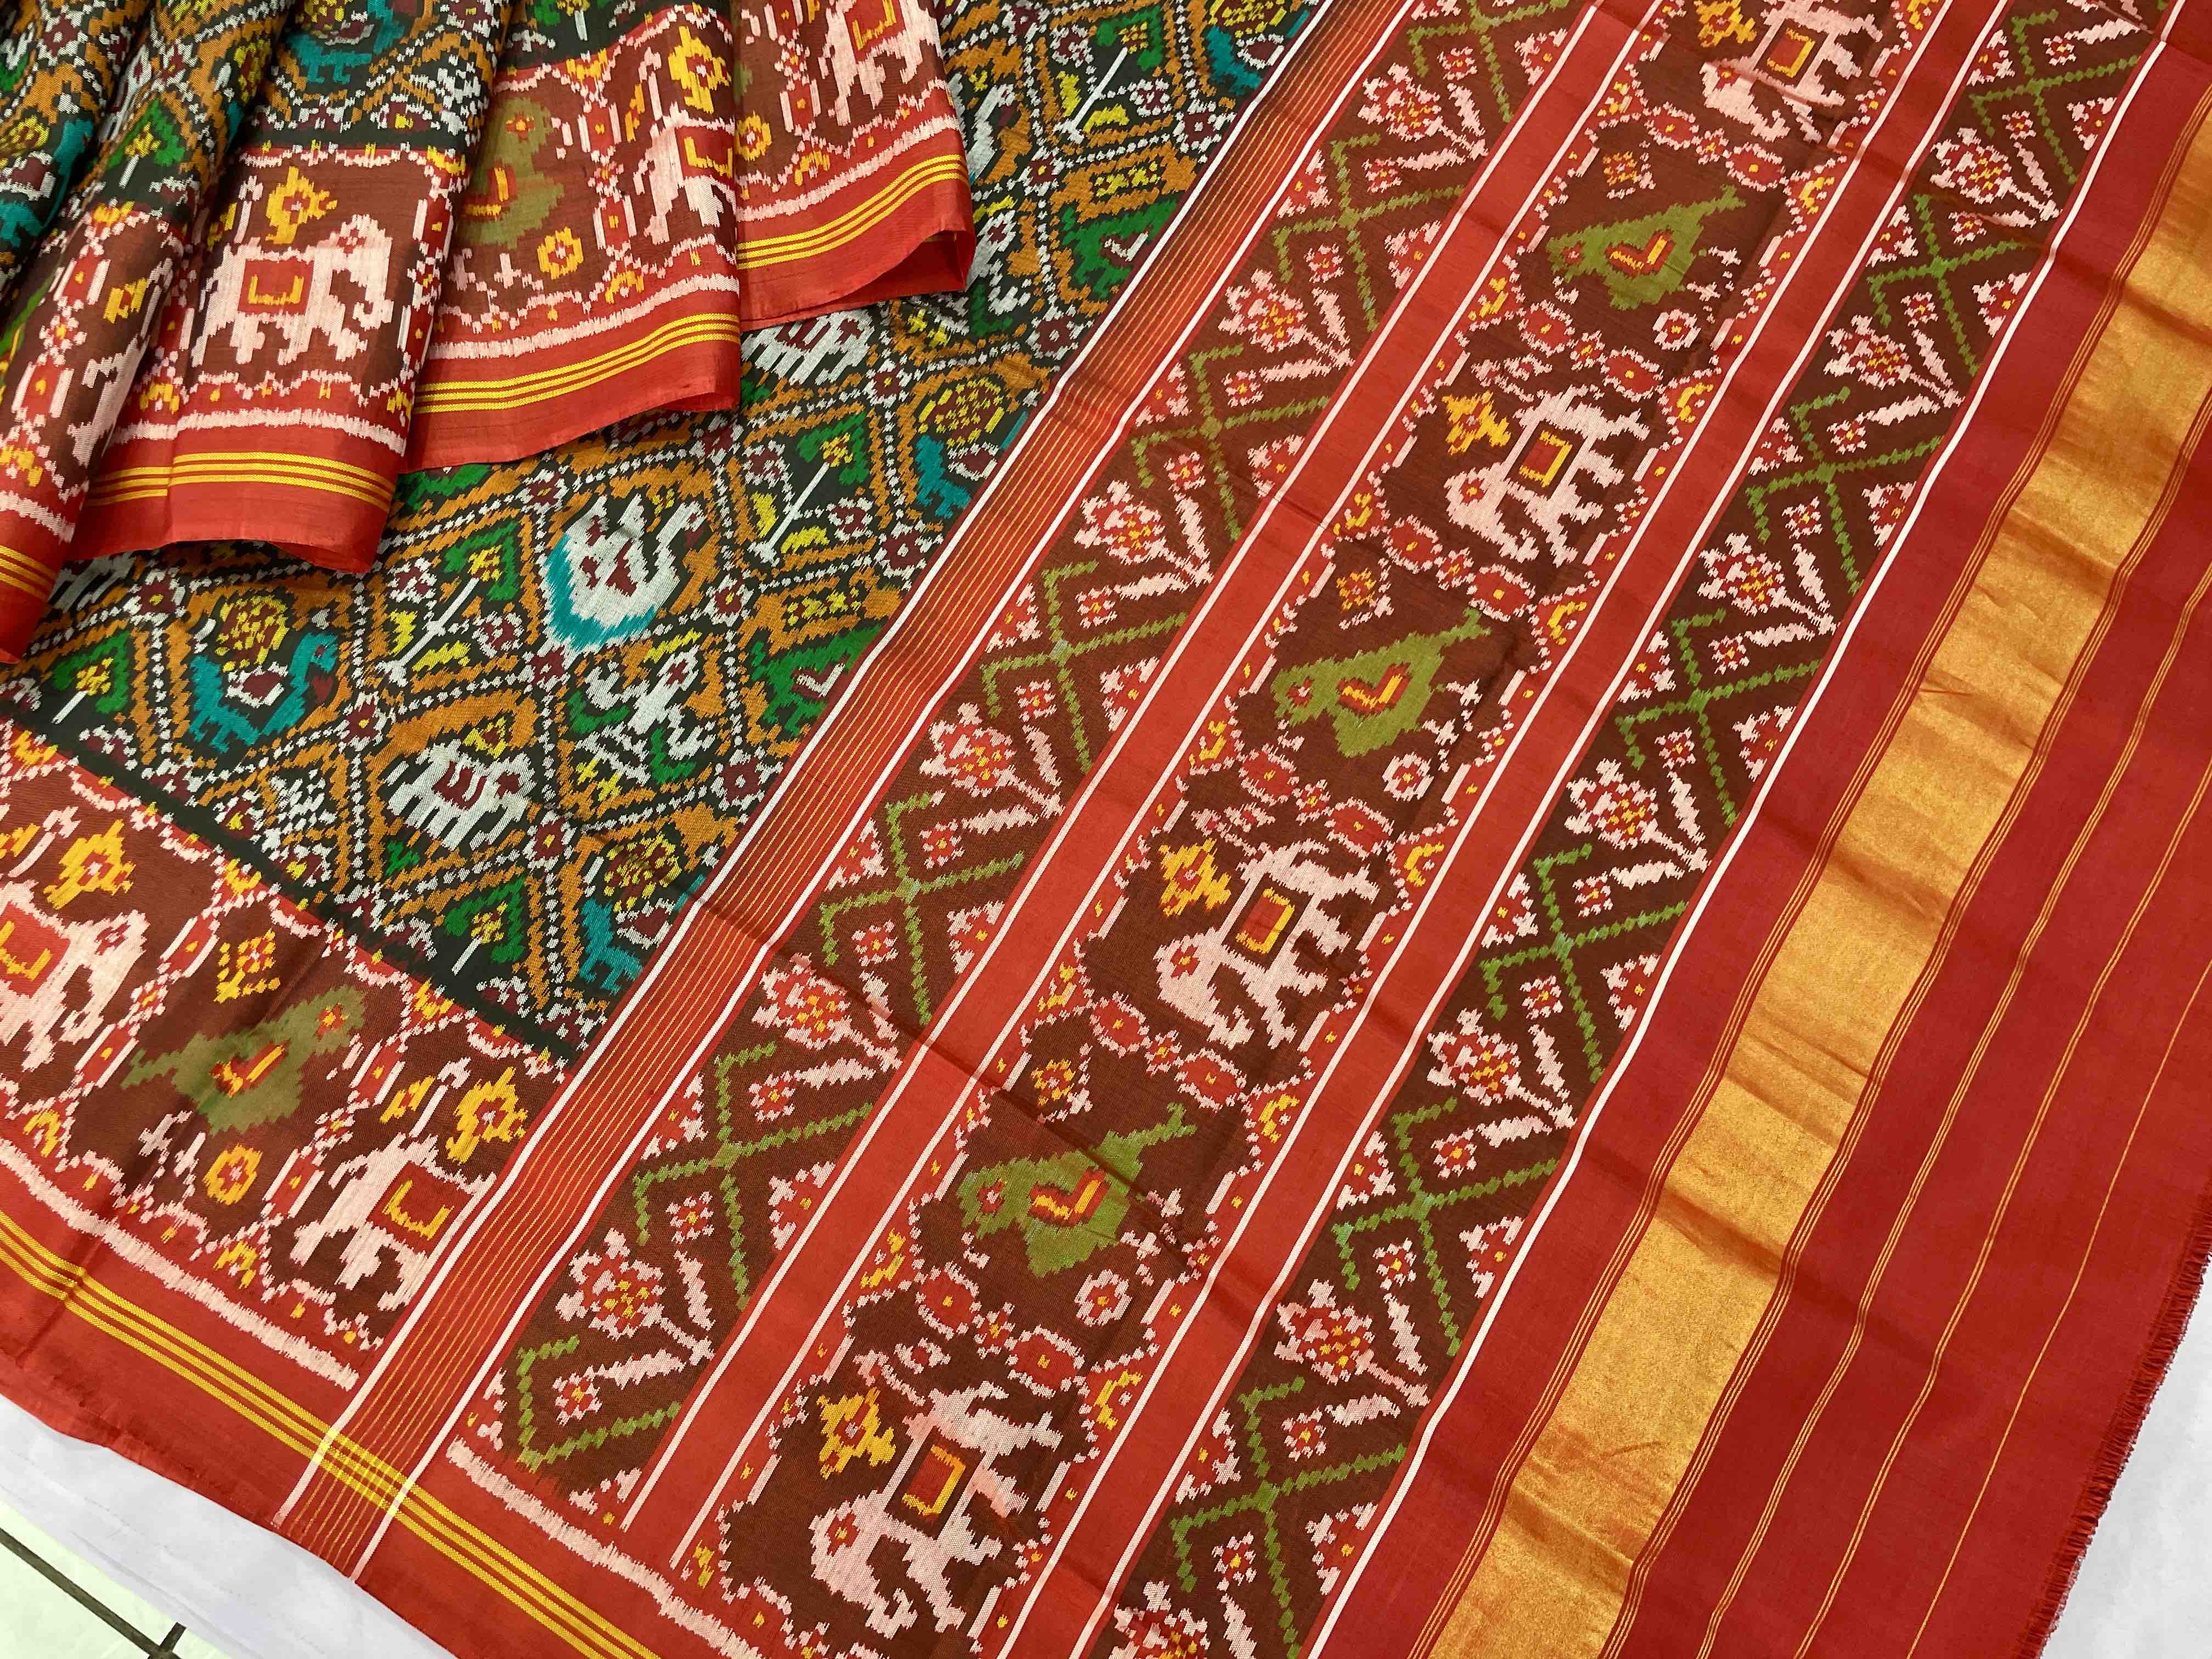 Orenge narikunj design red pallu patola saree - SindhoiPatolaArt